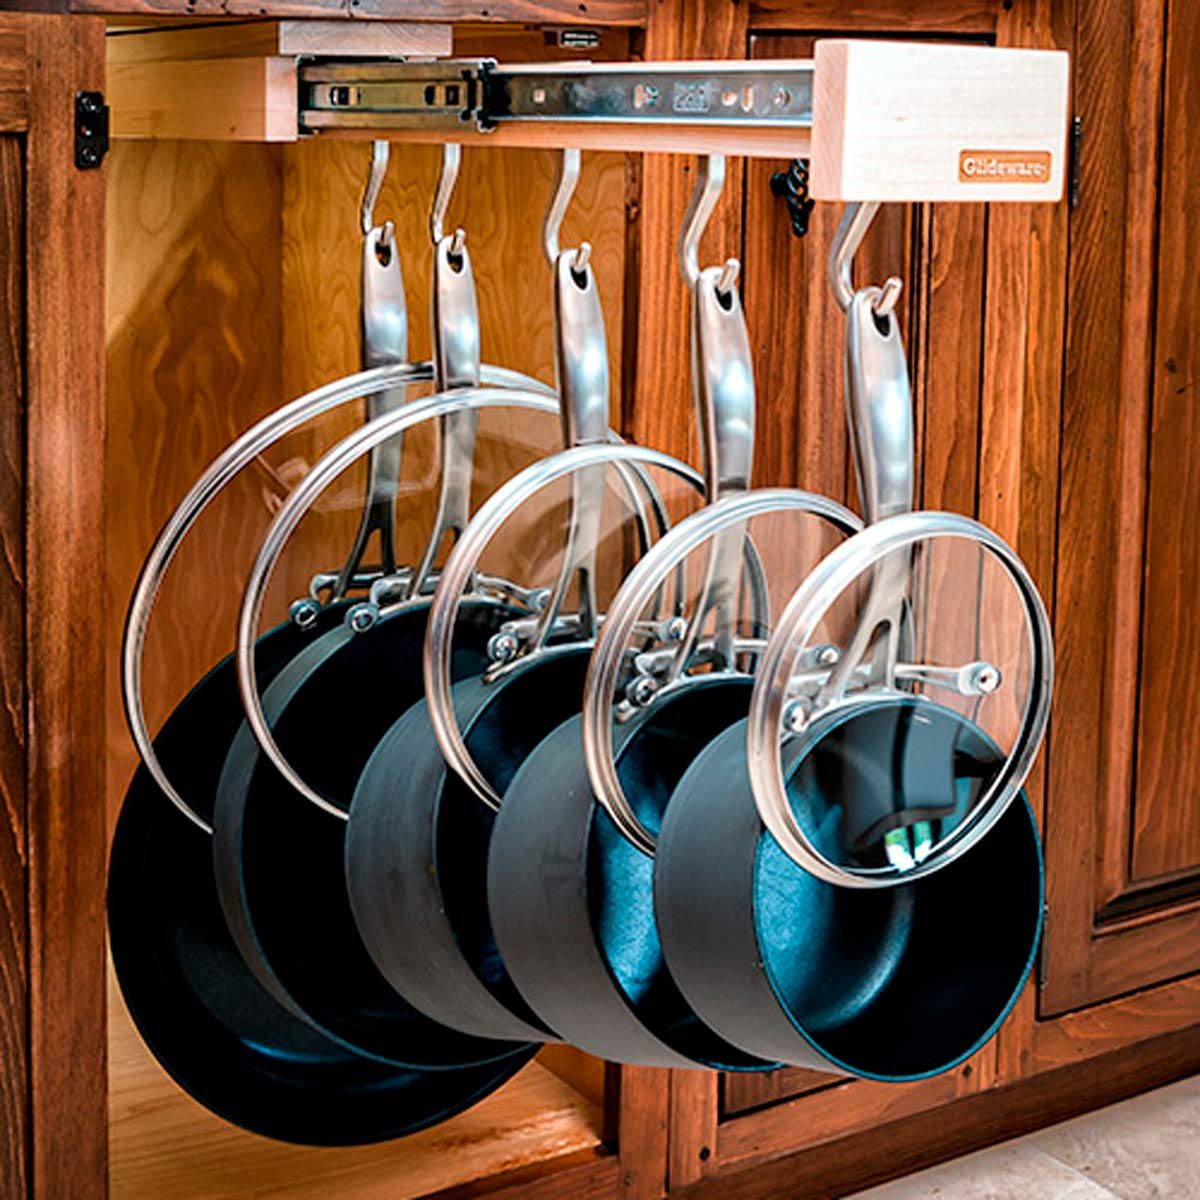 1pc Dish Rack Under Sink Organizers And Storage, Pull Out Cabinet Built-in  Organizer, Kitchen Drawer Organizer, Kitchen Shelf With Sliding Storage  Drawer, Kitchen Accessories